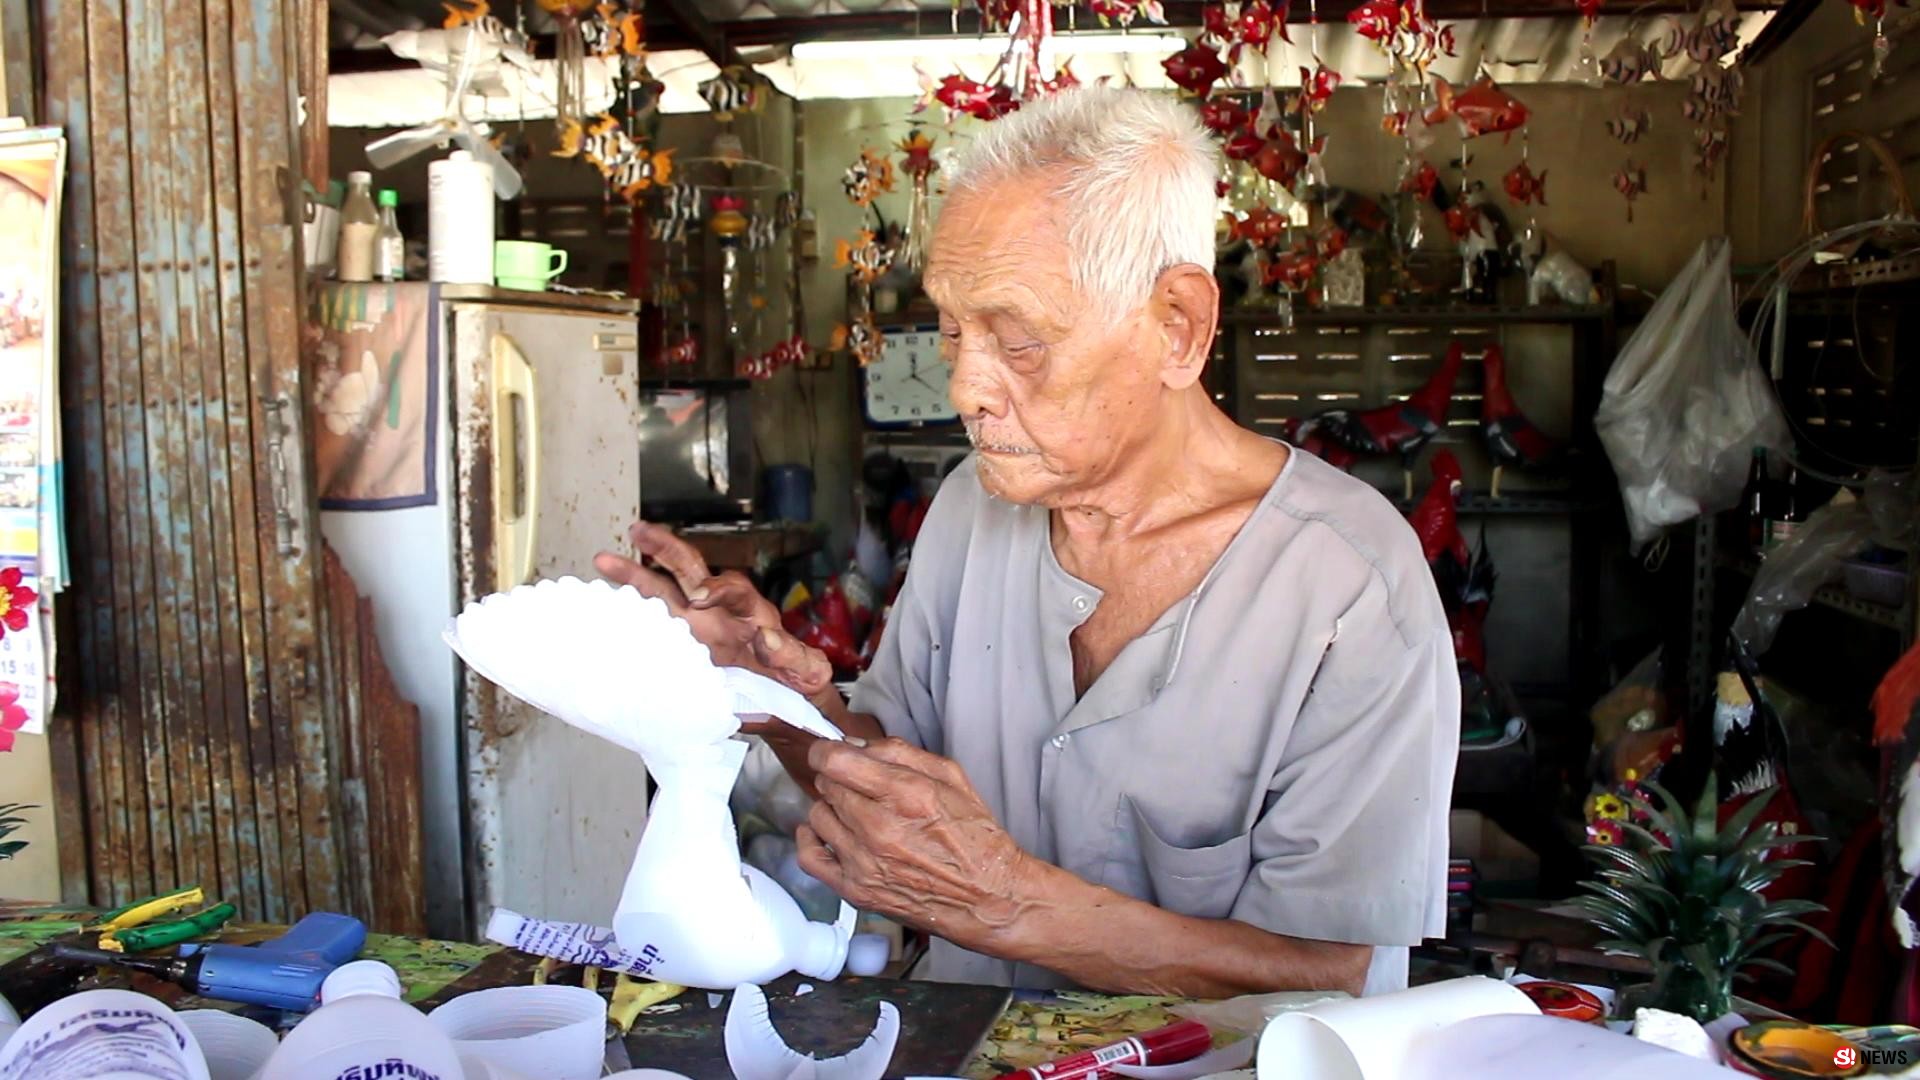 ราชบุรี - กู๊ดไอเดียปู่วัย93ปีอดีตช่างปั้นโอ่งราชบุรีประดิษฐ์ไก่จากขวดสวยเหมือนจริง